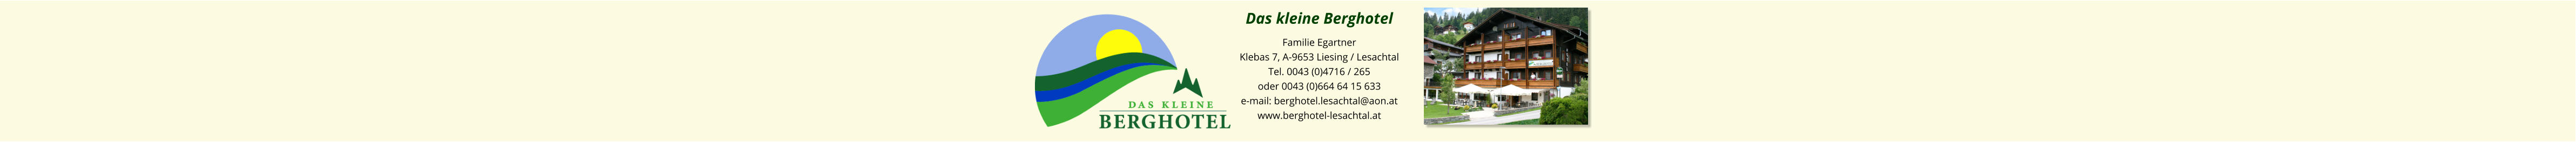 Das kleine Berghotel Familie Egartner Klebas 7, A-9653 Liesing / Lesachtal Tel. 0043 (0)4716 / 265 oder 0043 (0)664 64 15 633 e-mail: berghotel.lesachtal@aon.at www.berghotel-lesachtal.at